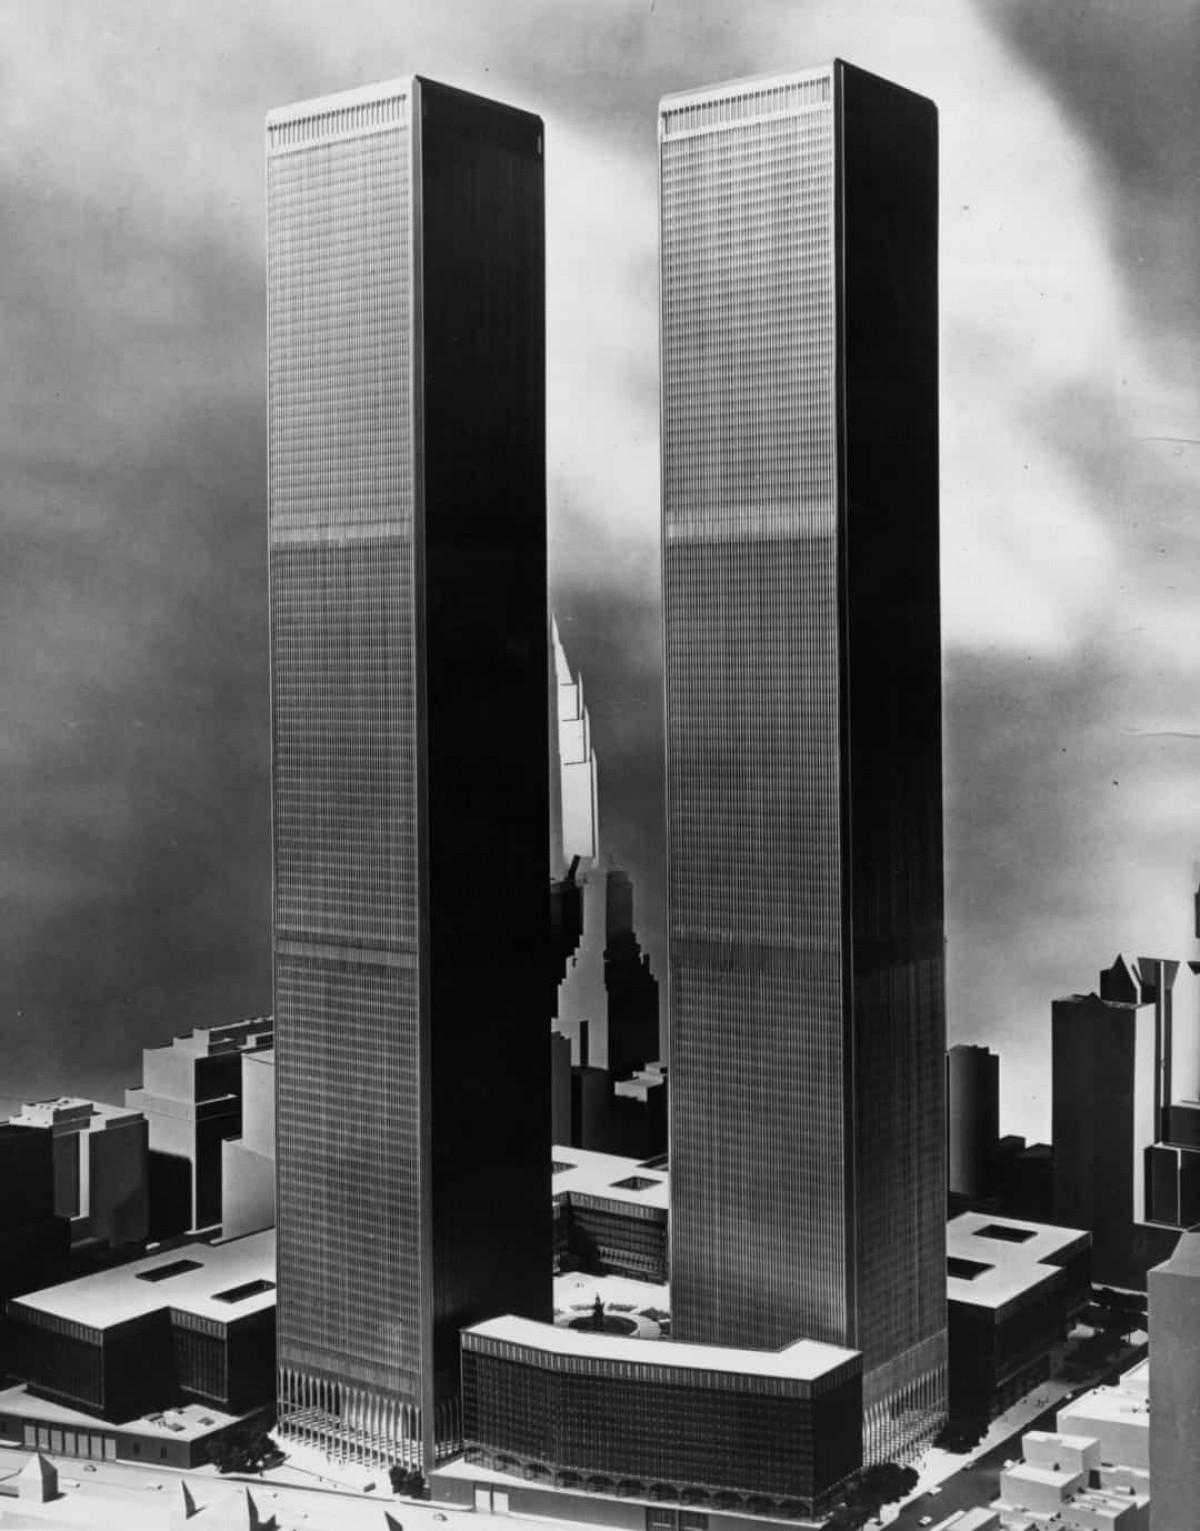 Hầu hết các tòa nhà cao tầng ở New York được xây dựng bằng cách xếp chồng kính và thép, nhưng ông Yamasaki đã đề xuất một thiết kế gồm 2 ống rỗng được bao quanh các cột thép. Các giàn trên mỗi tầng kết nối các cột này với lõi trung tâm của tòa nhà. 